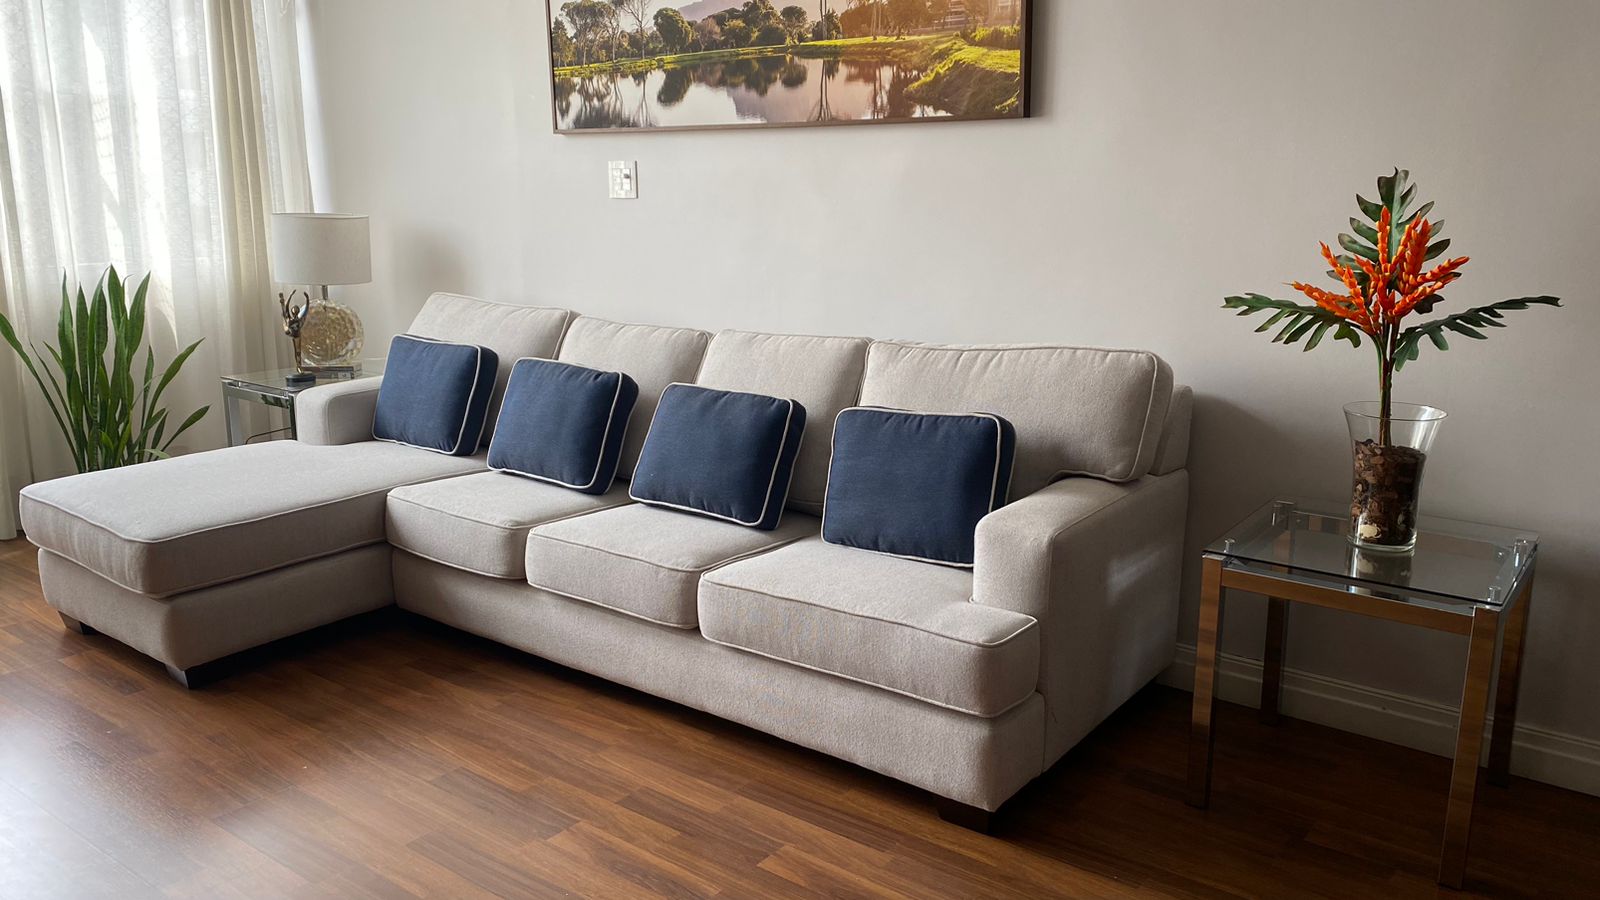 No momento você está vendo 30 dicas reforma de sofa em veludo comprovado